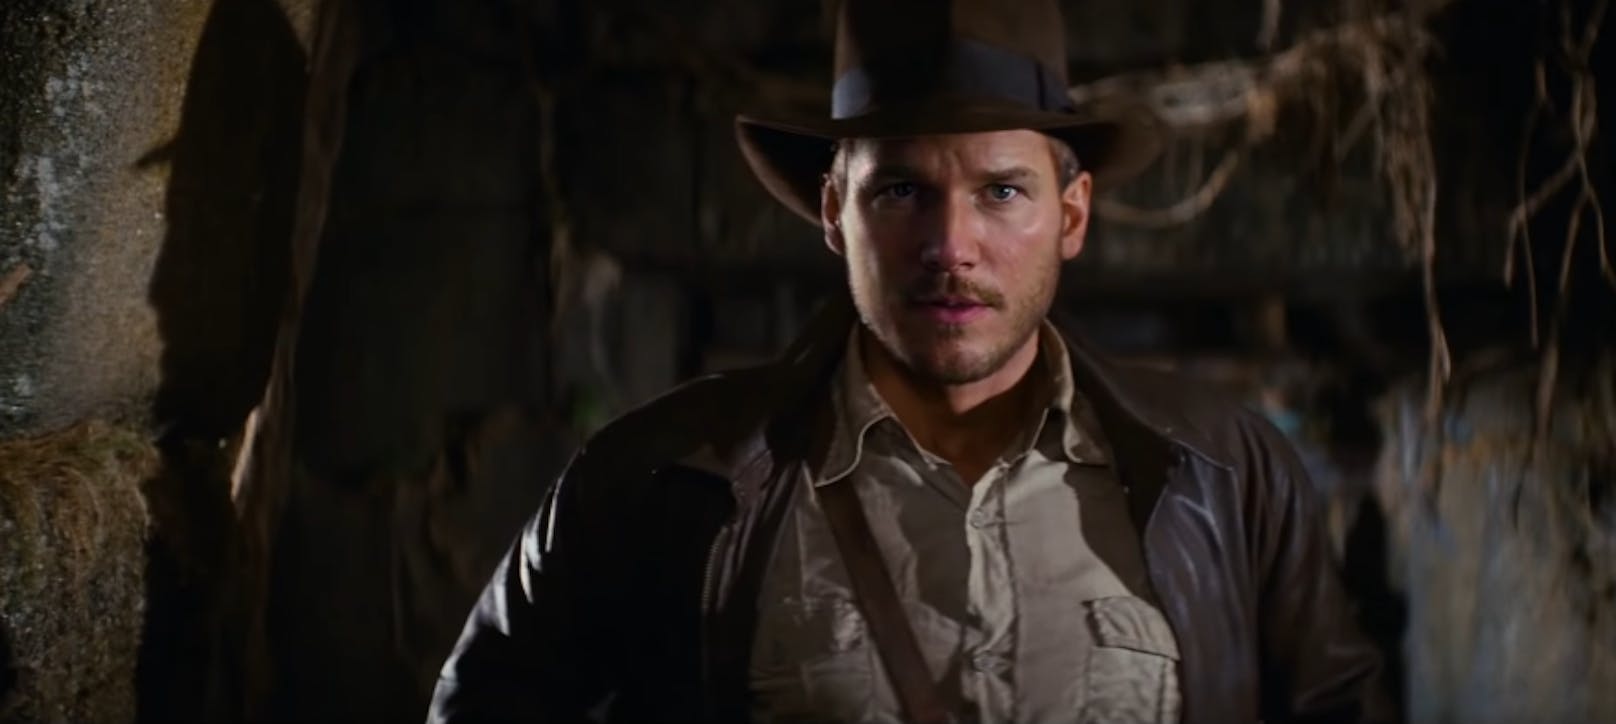 Marvel-Star <strong>Chris Pratt</strong> ("Guardians of the Galaxy") wird in einem Deep Fake-Video zu <em>"Indiana Jones"</em>.